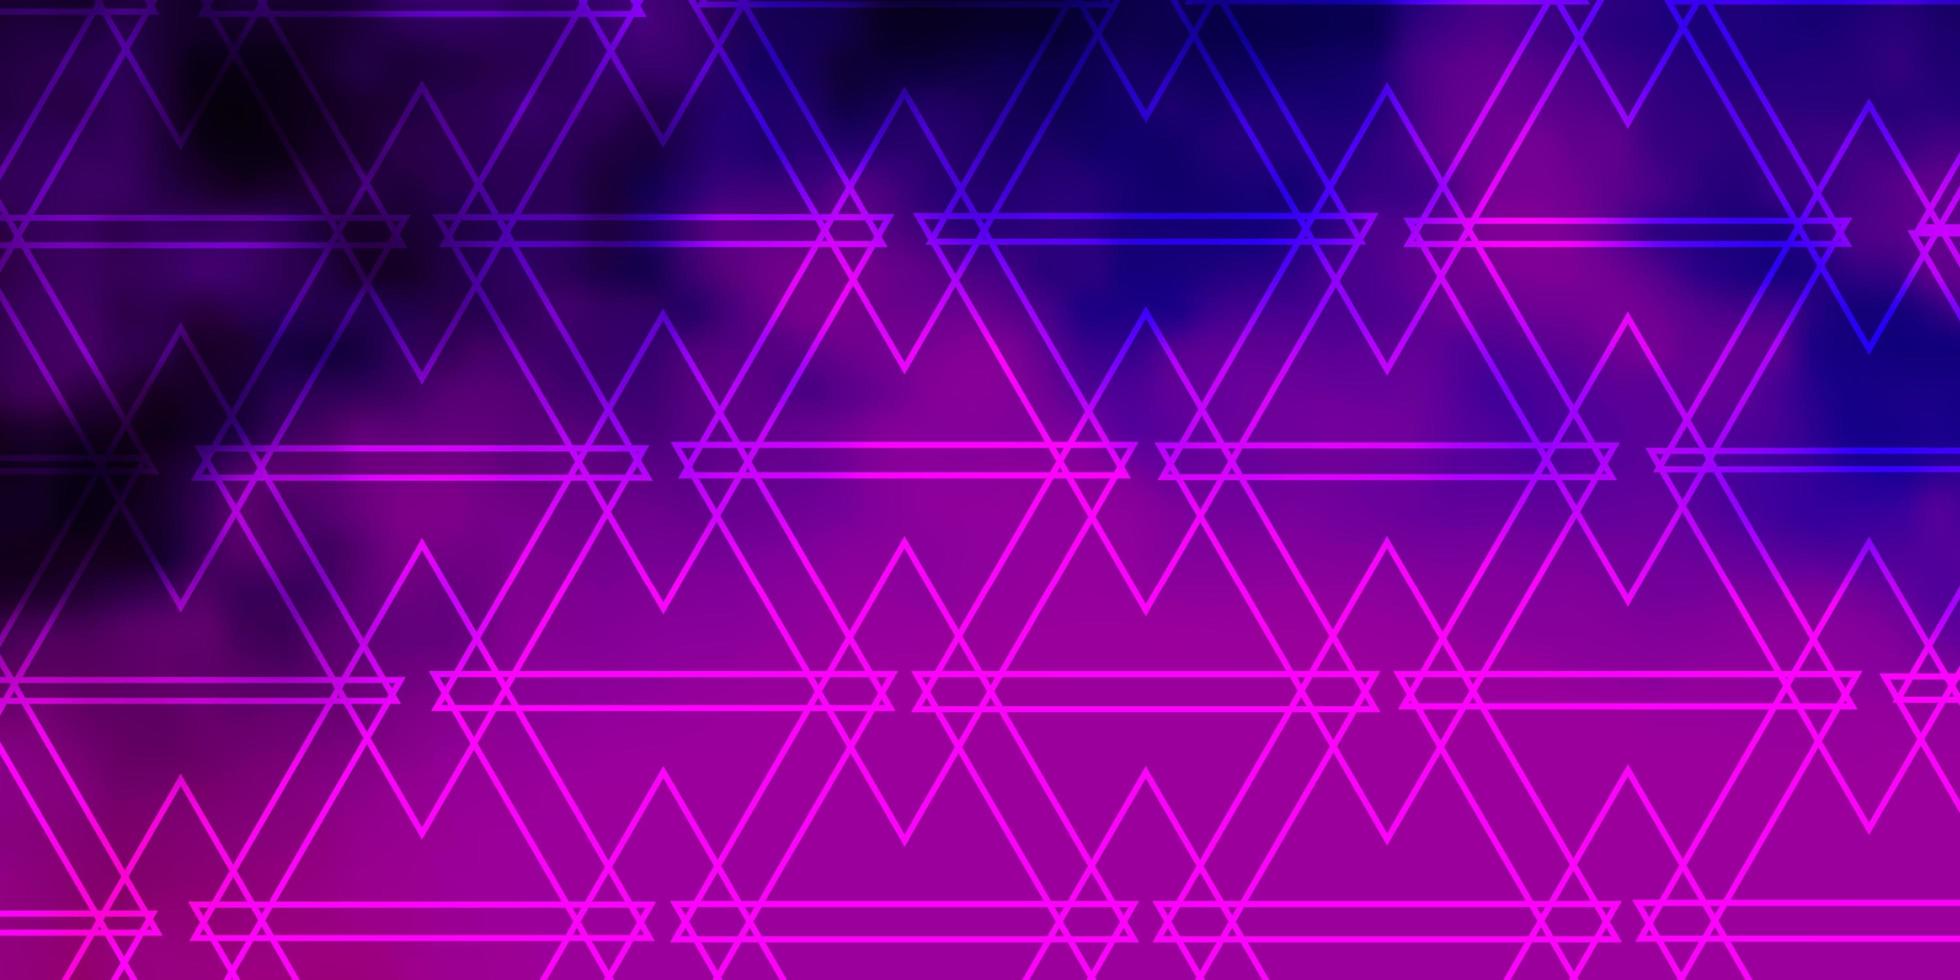 pano de fundo de vetor rosa roxo claro com linhas, triângulos ilustração gradiente abstrata com padrão de triângulos para sites